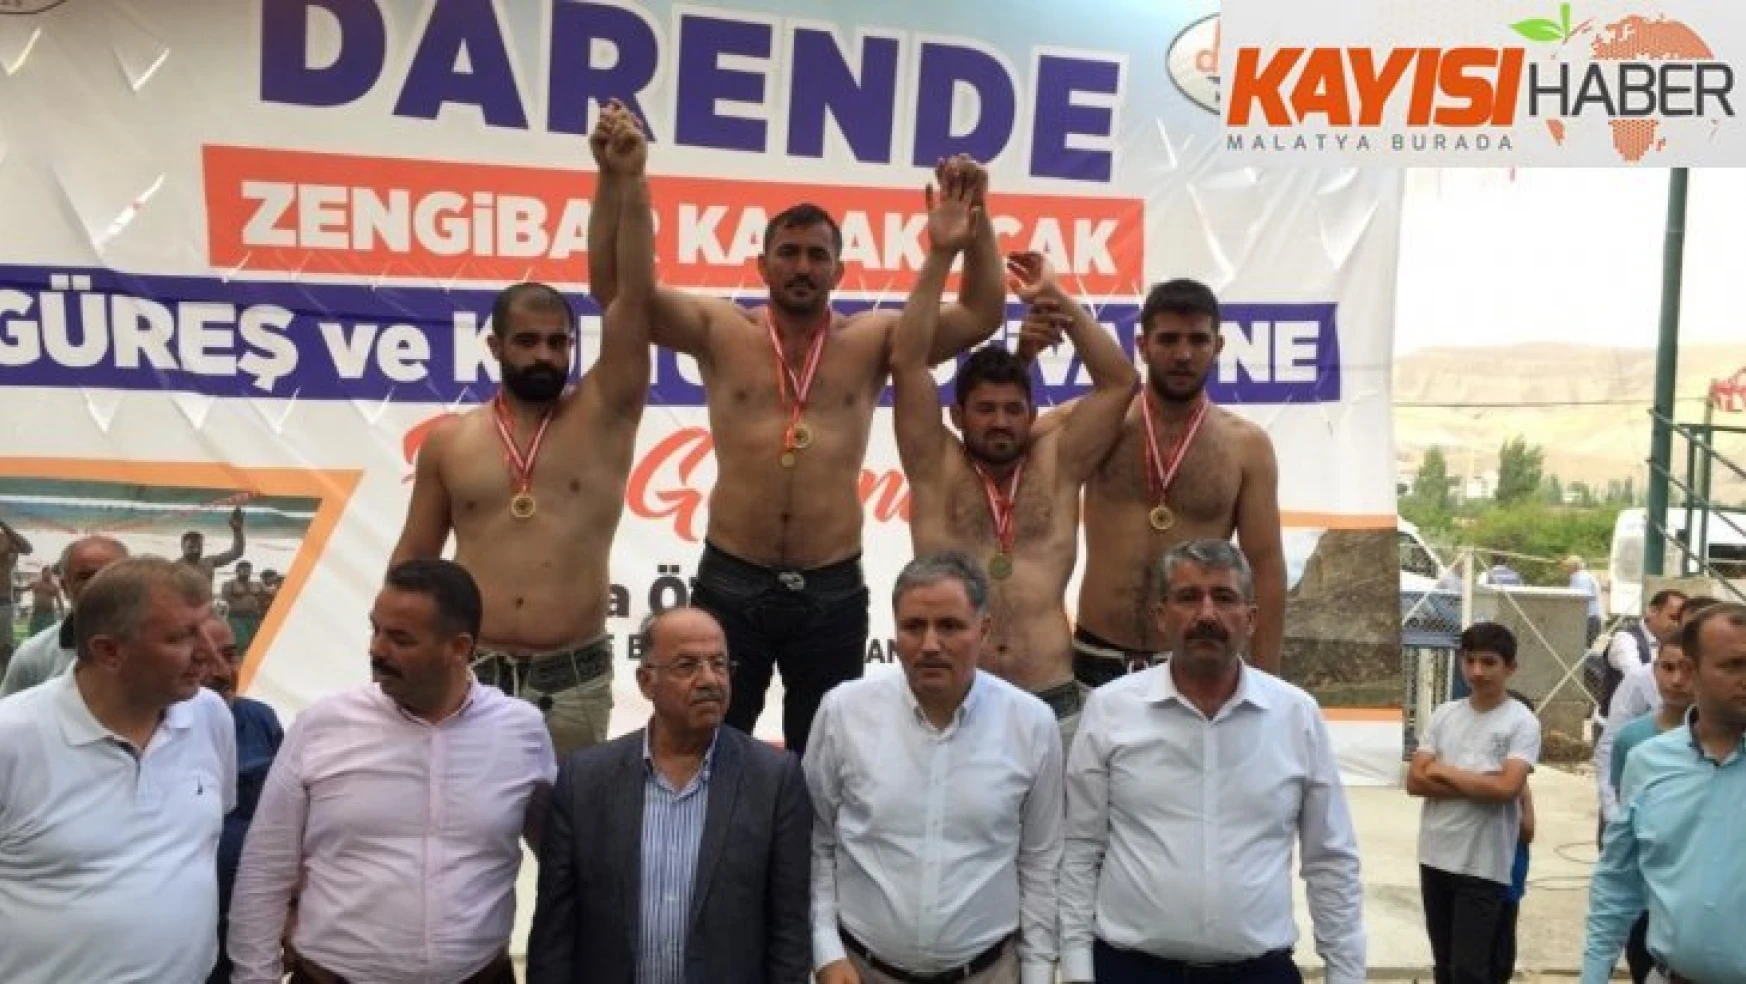 Darende'de Zengibar Karakucak Güreşleri